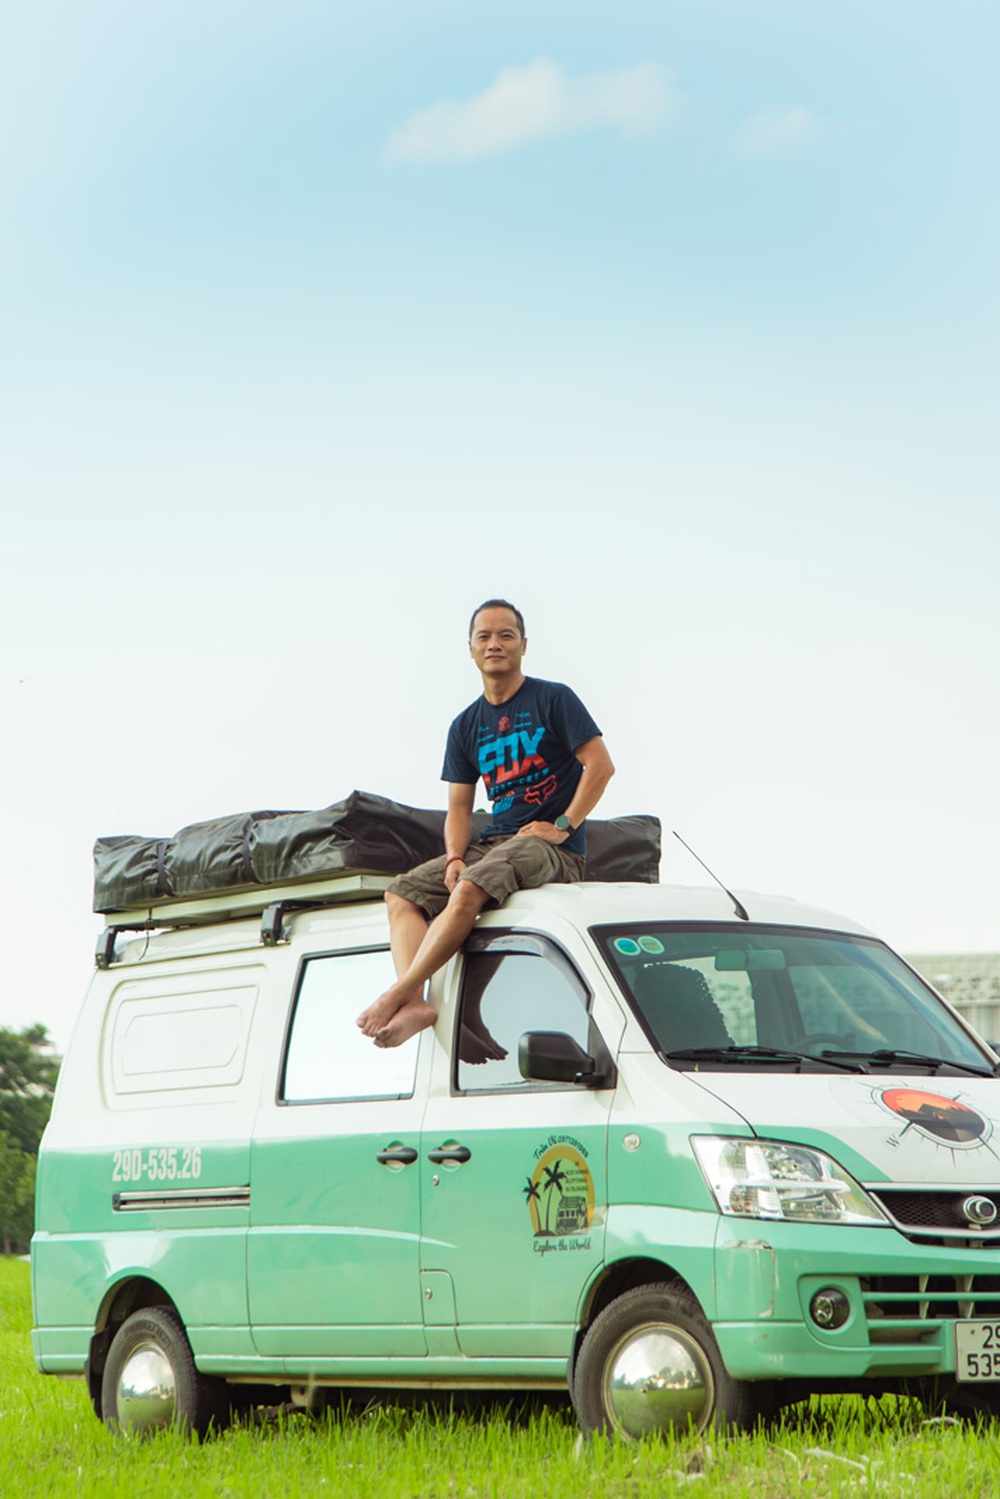 Bán Triton mua xe van THACO hơn 300 triệu độ camping chạy Bắc Nam hơn 18.000km, chủ xe trải lòng: Vui, tiện nhưng đi xa hơi cực - Ảnh 9.